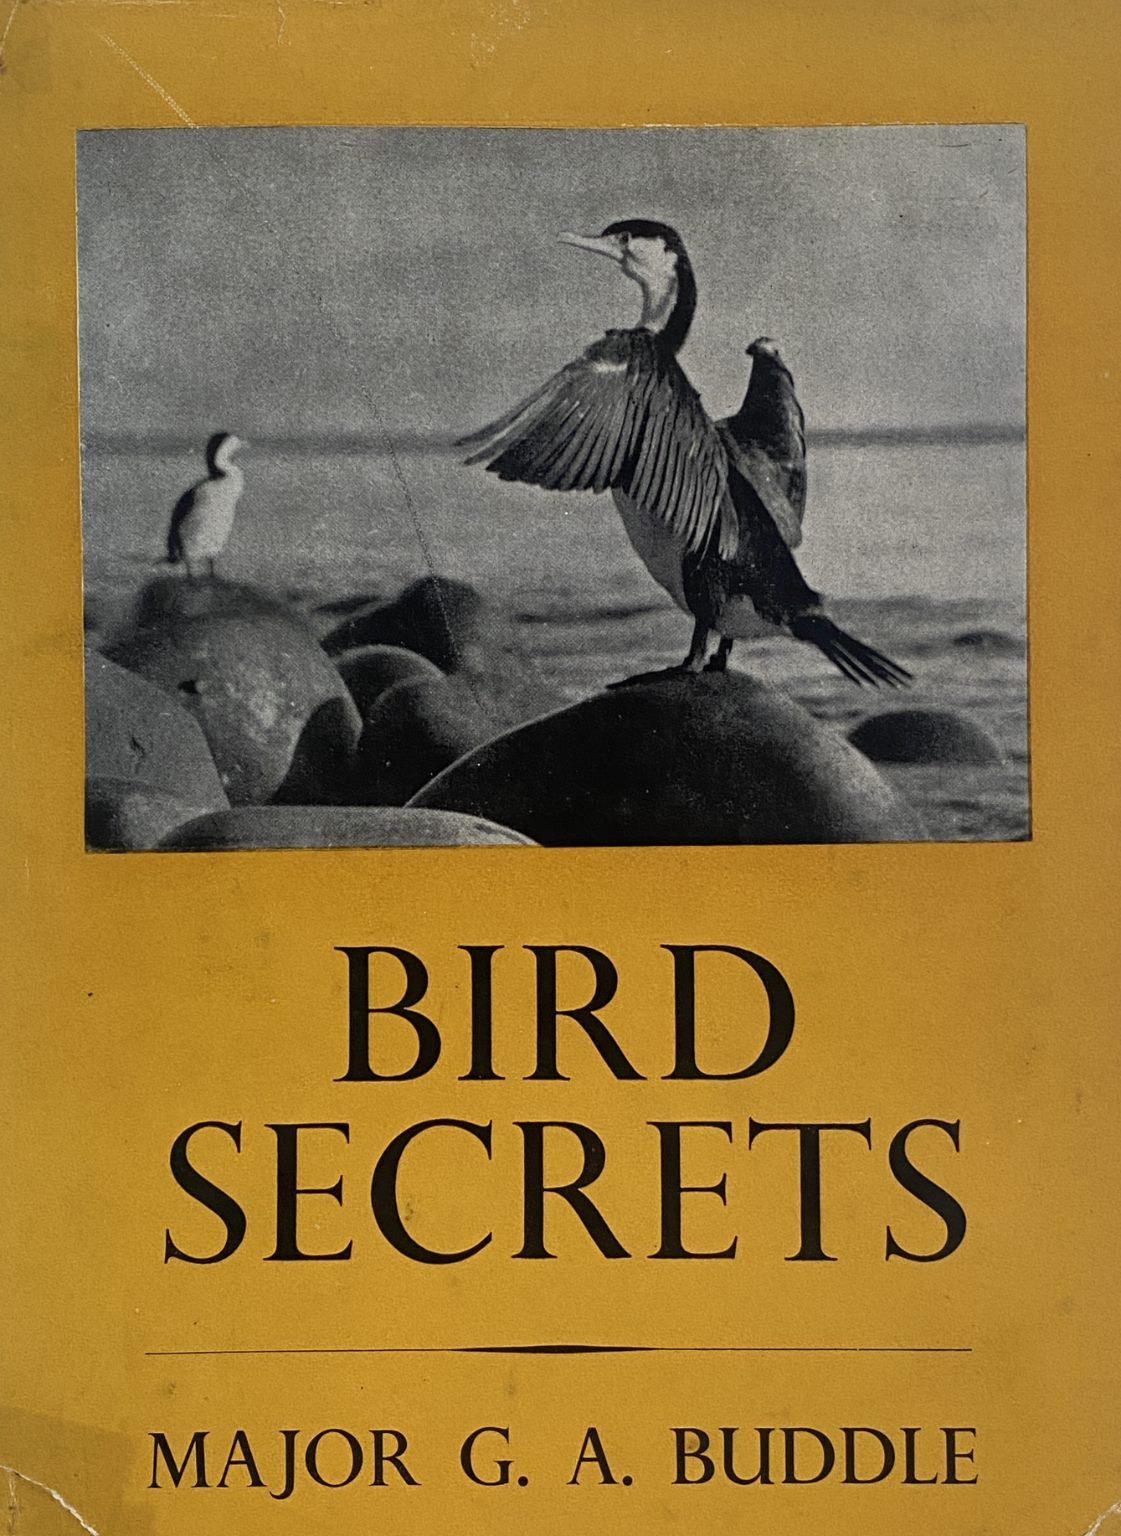 BIRD SECRETS